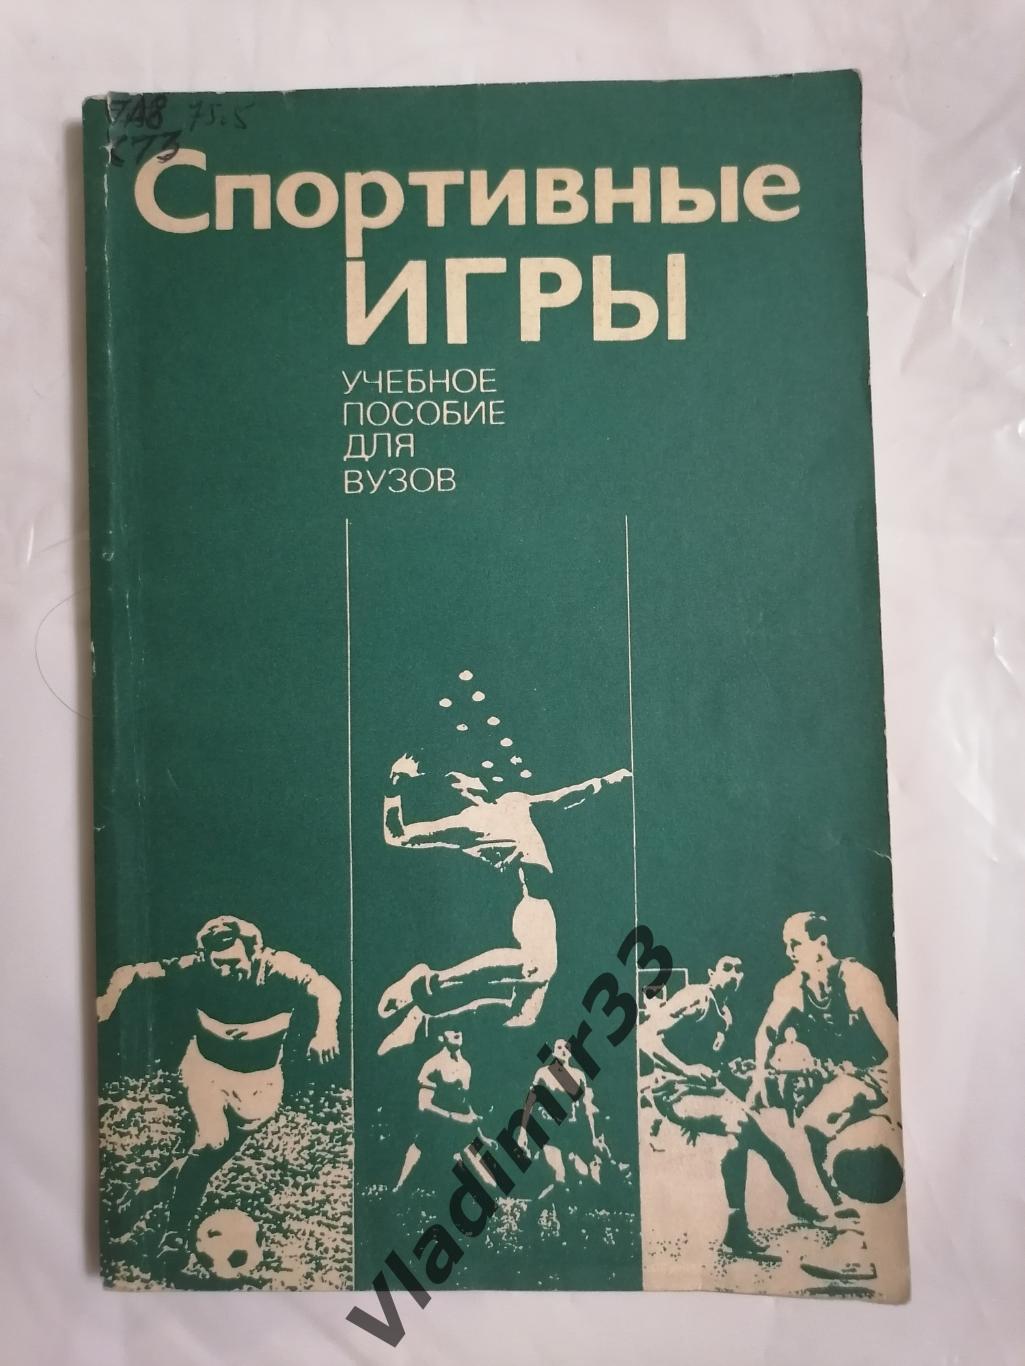 Спортивные игры. Пособие для вузов 1980 год